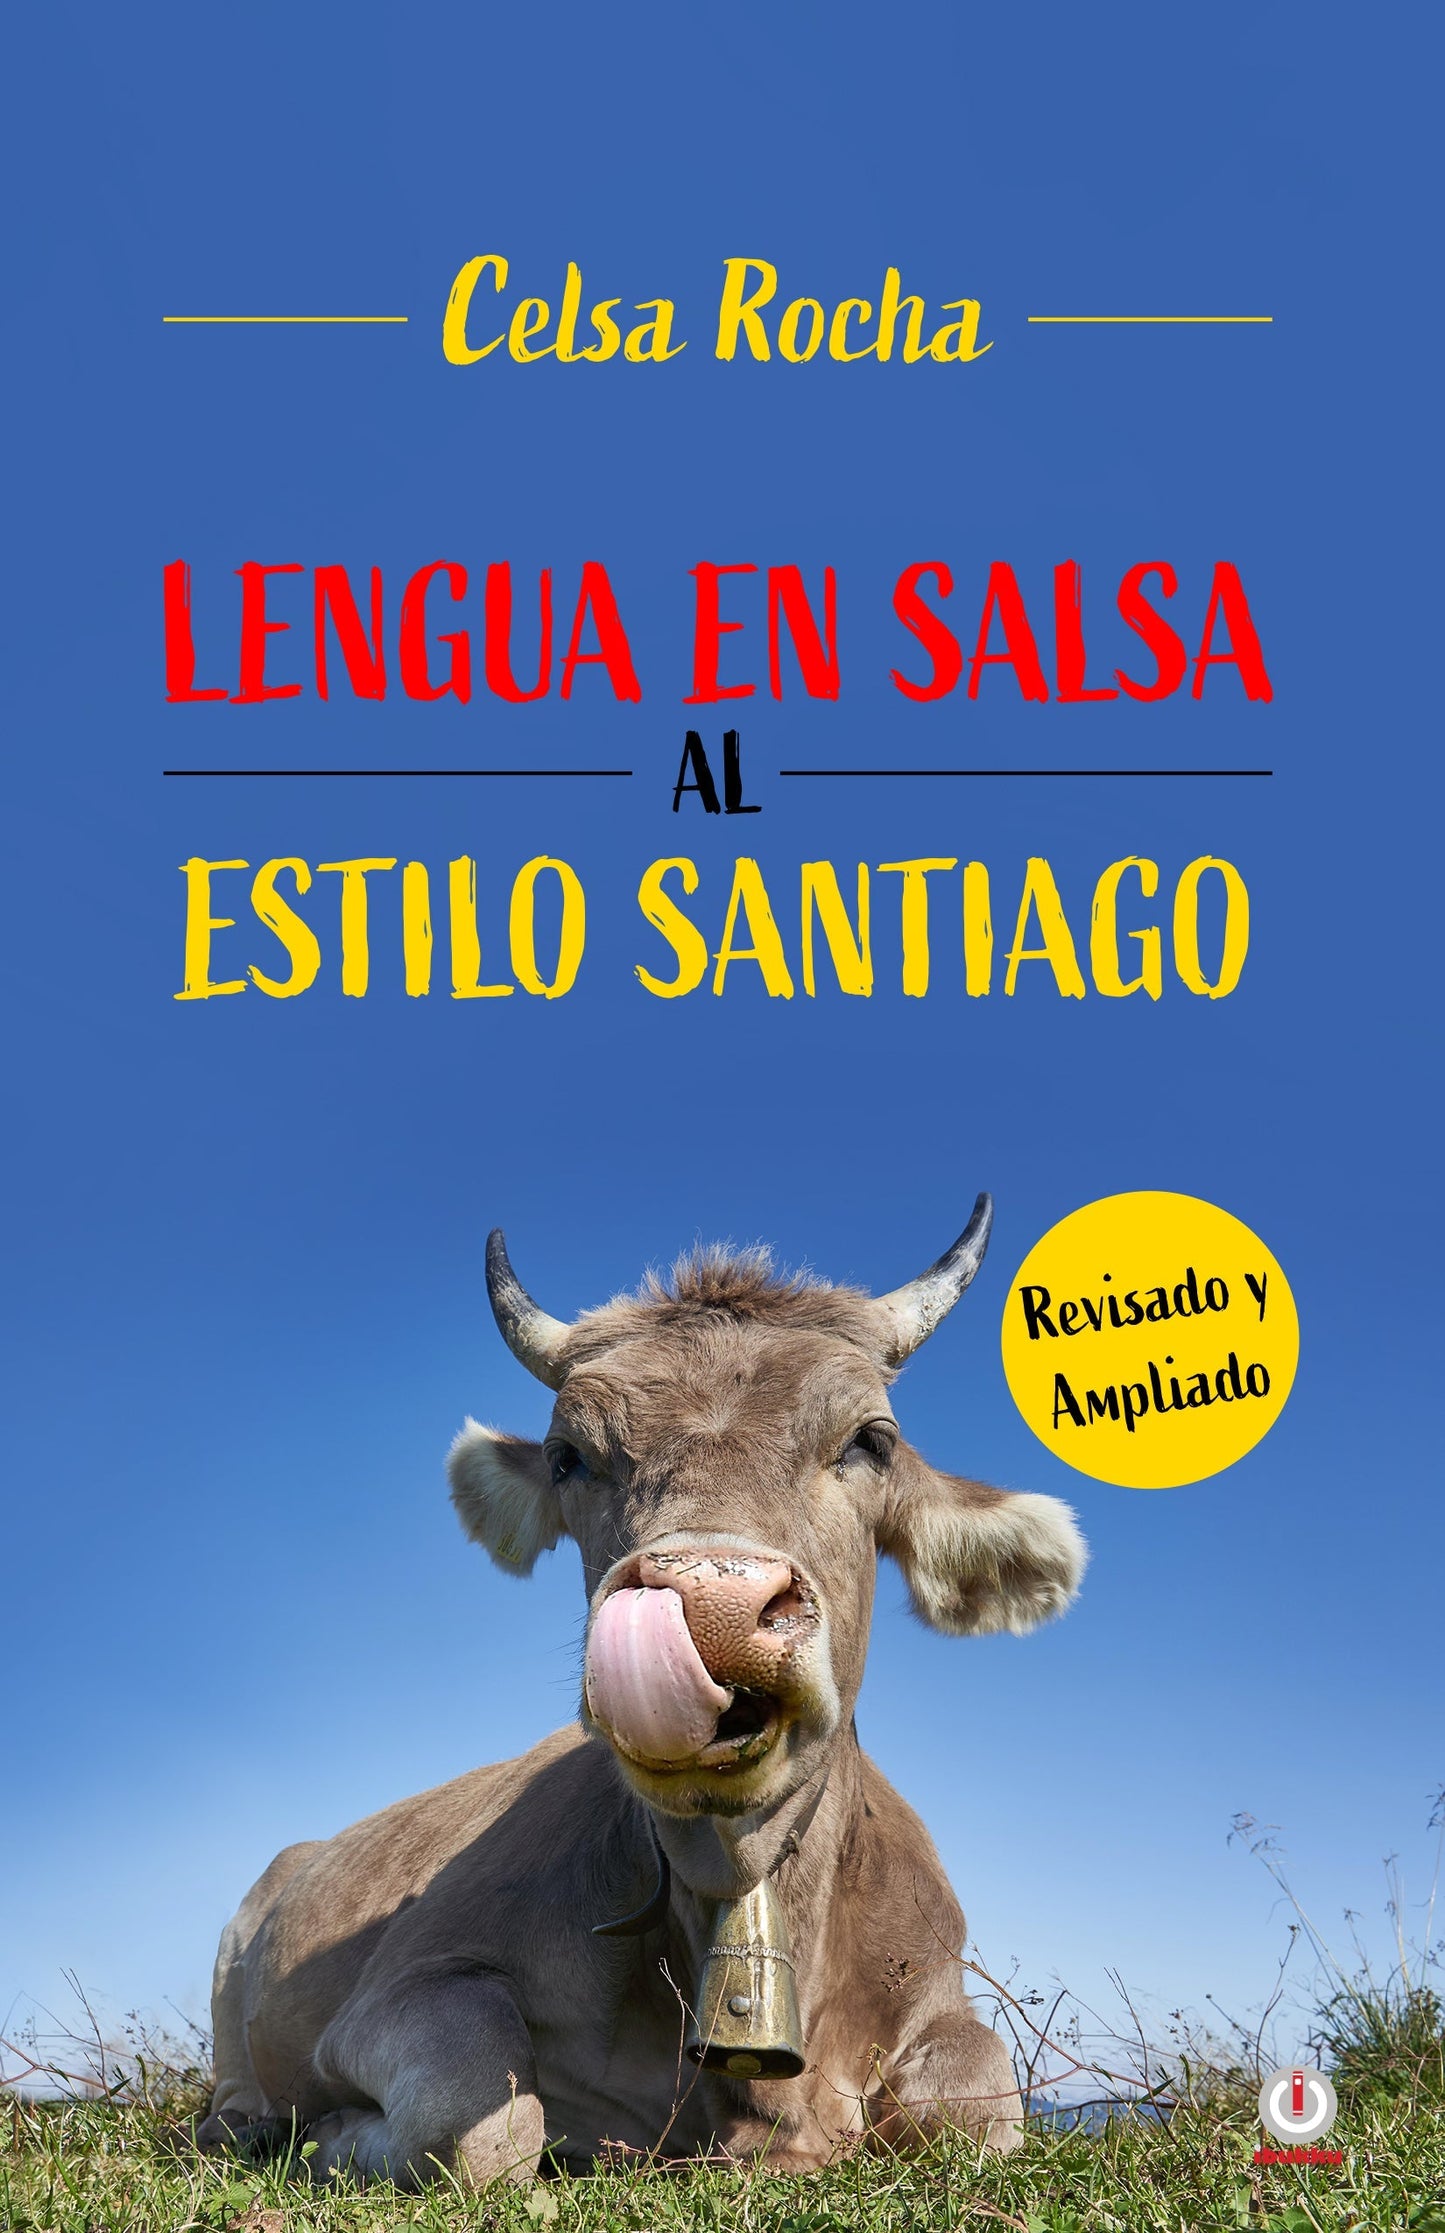 Copy of Lengua en salsa al estilo Santiago (Impreso Pasta dura)